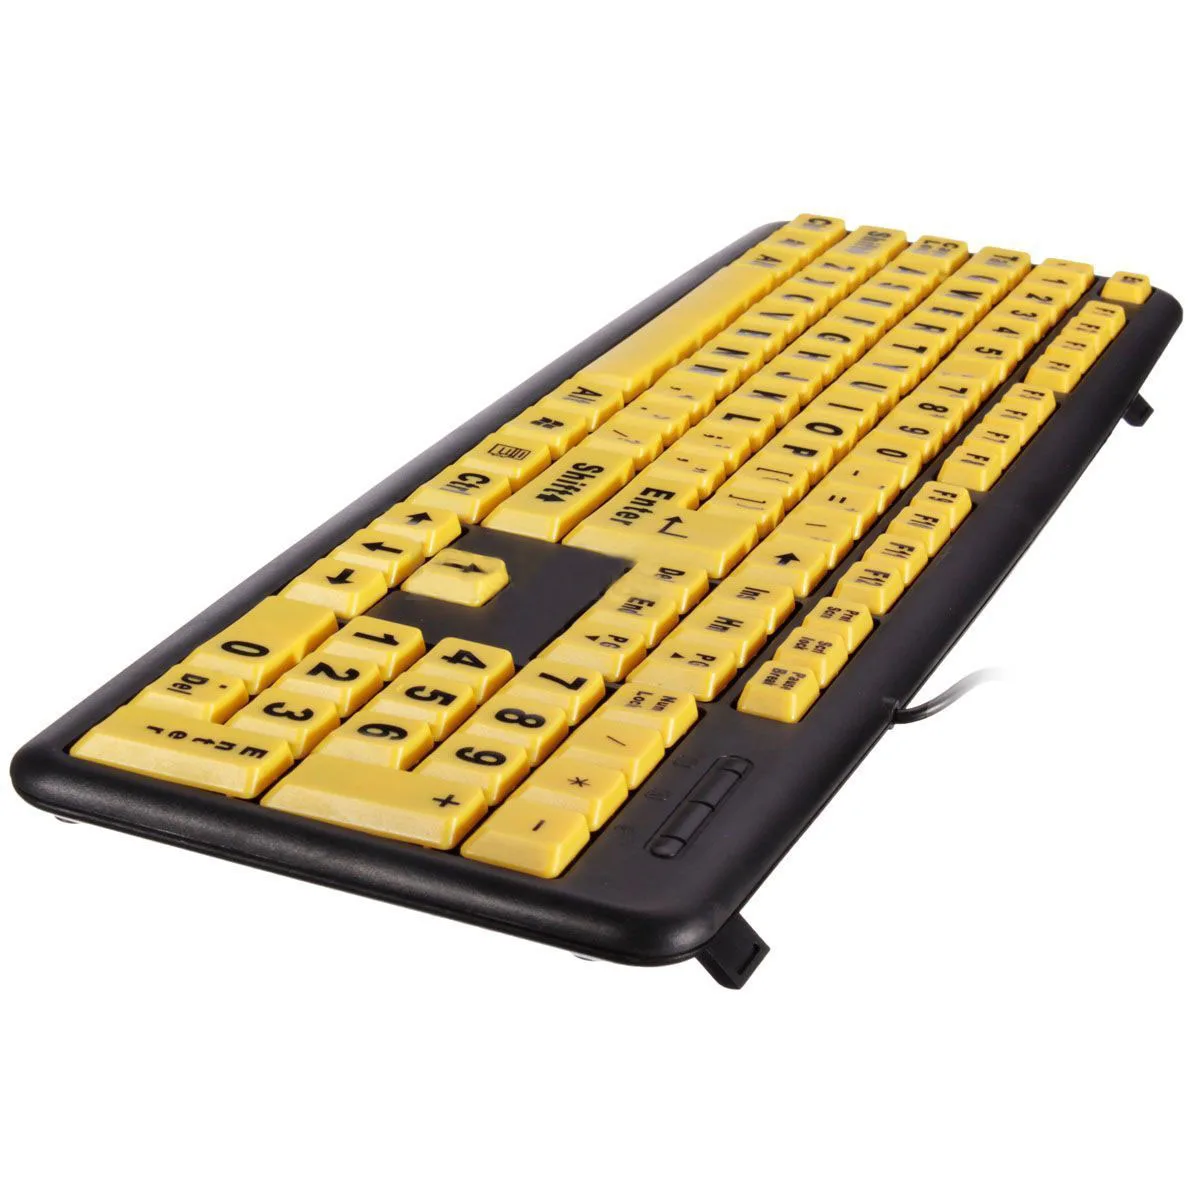 USB Большие буквы желтая кнопка клавиатура для пожилых людей